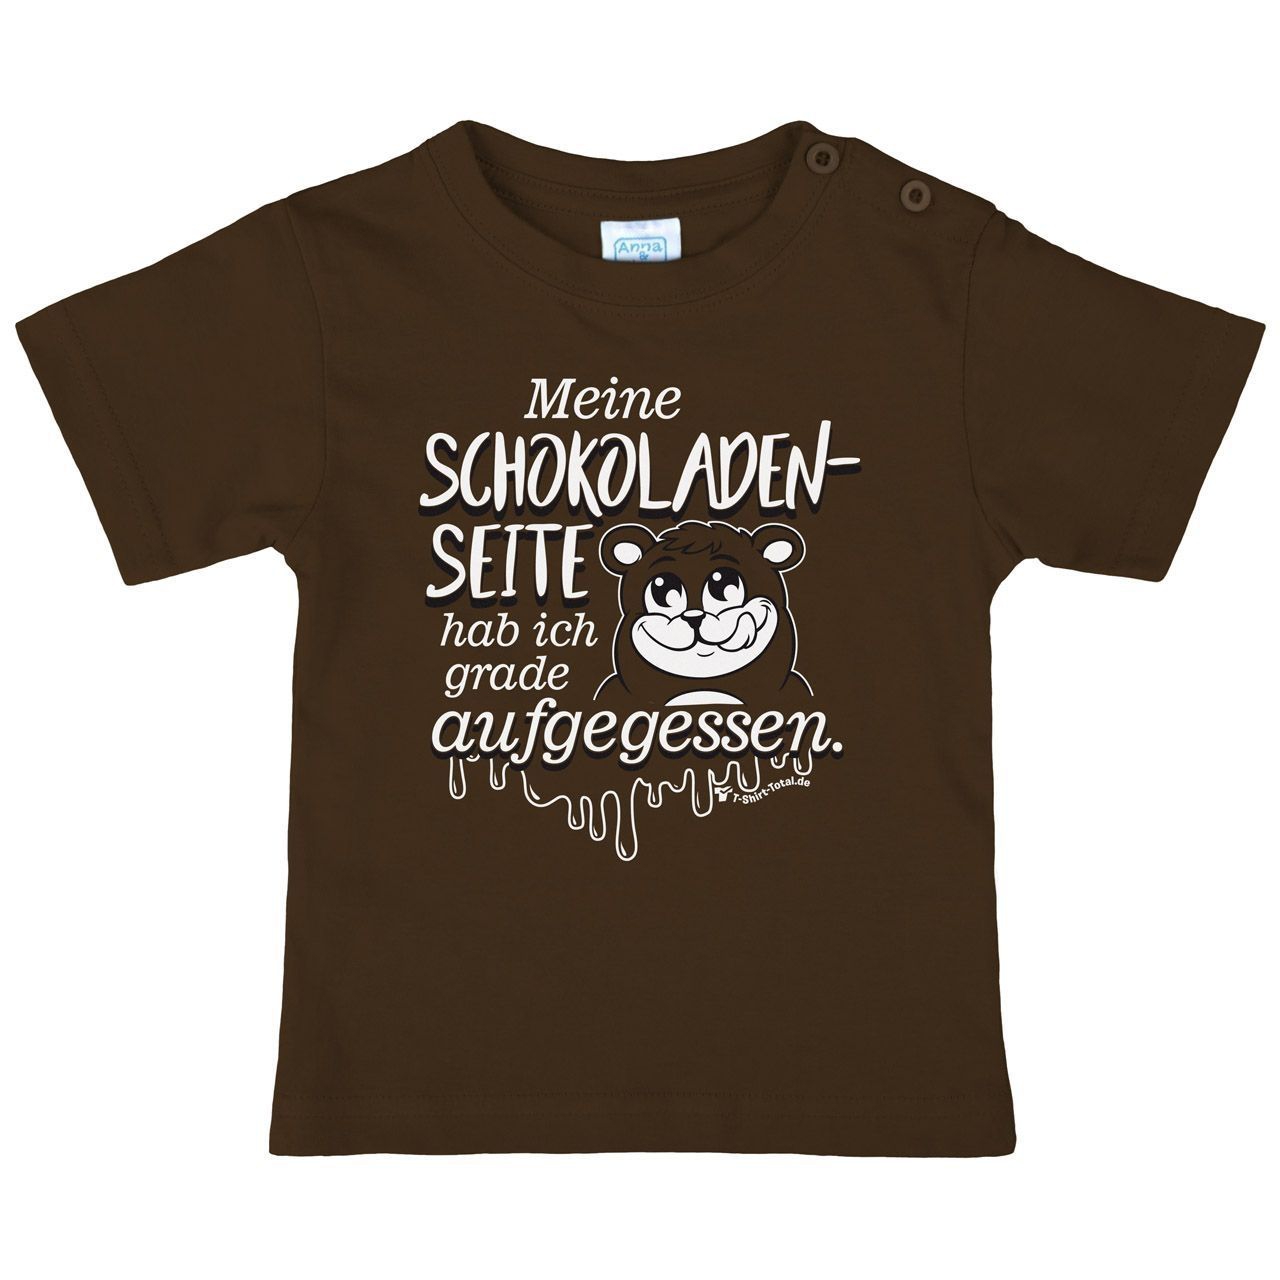 Schokoladenseite Kinder T-Shirt braun 98